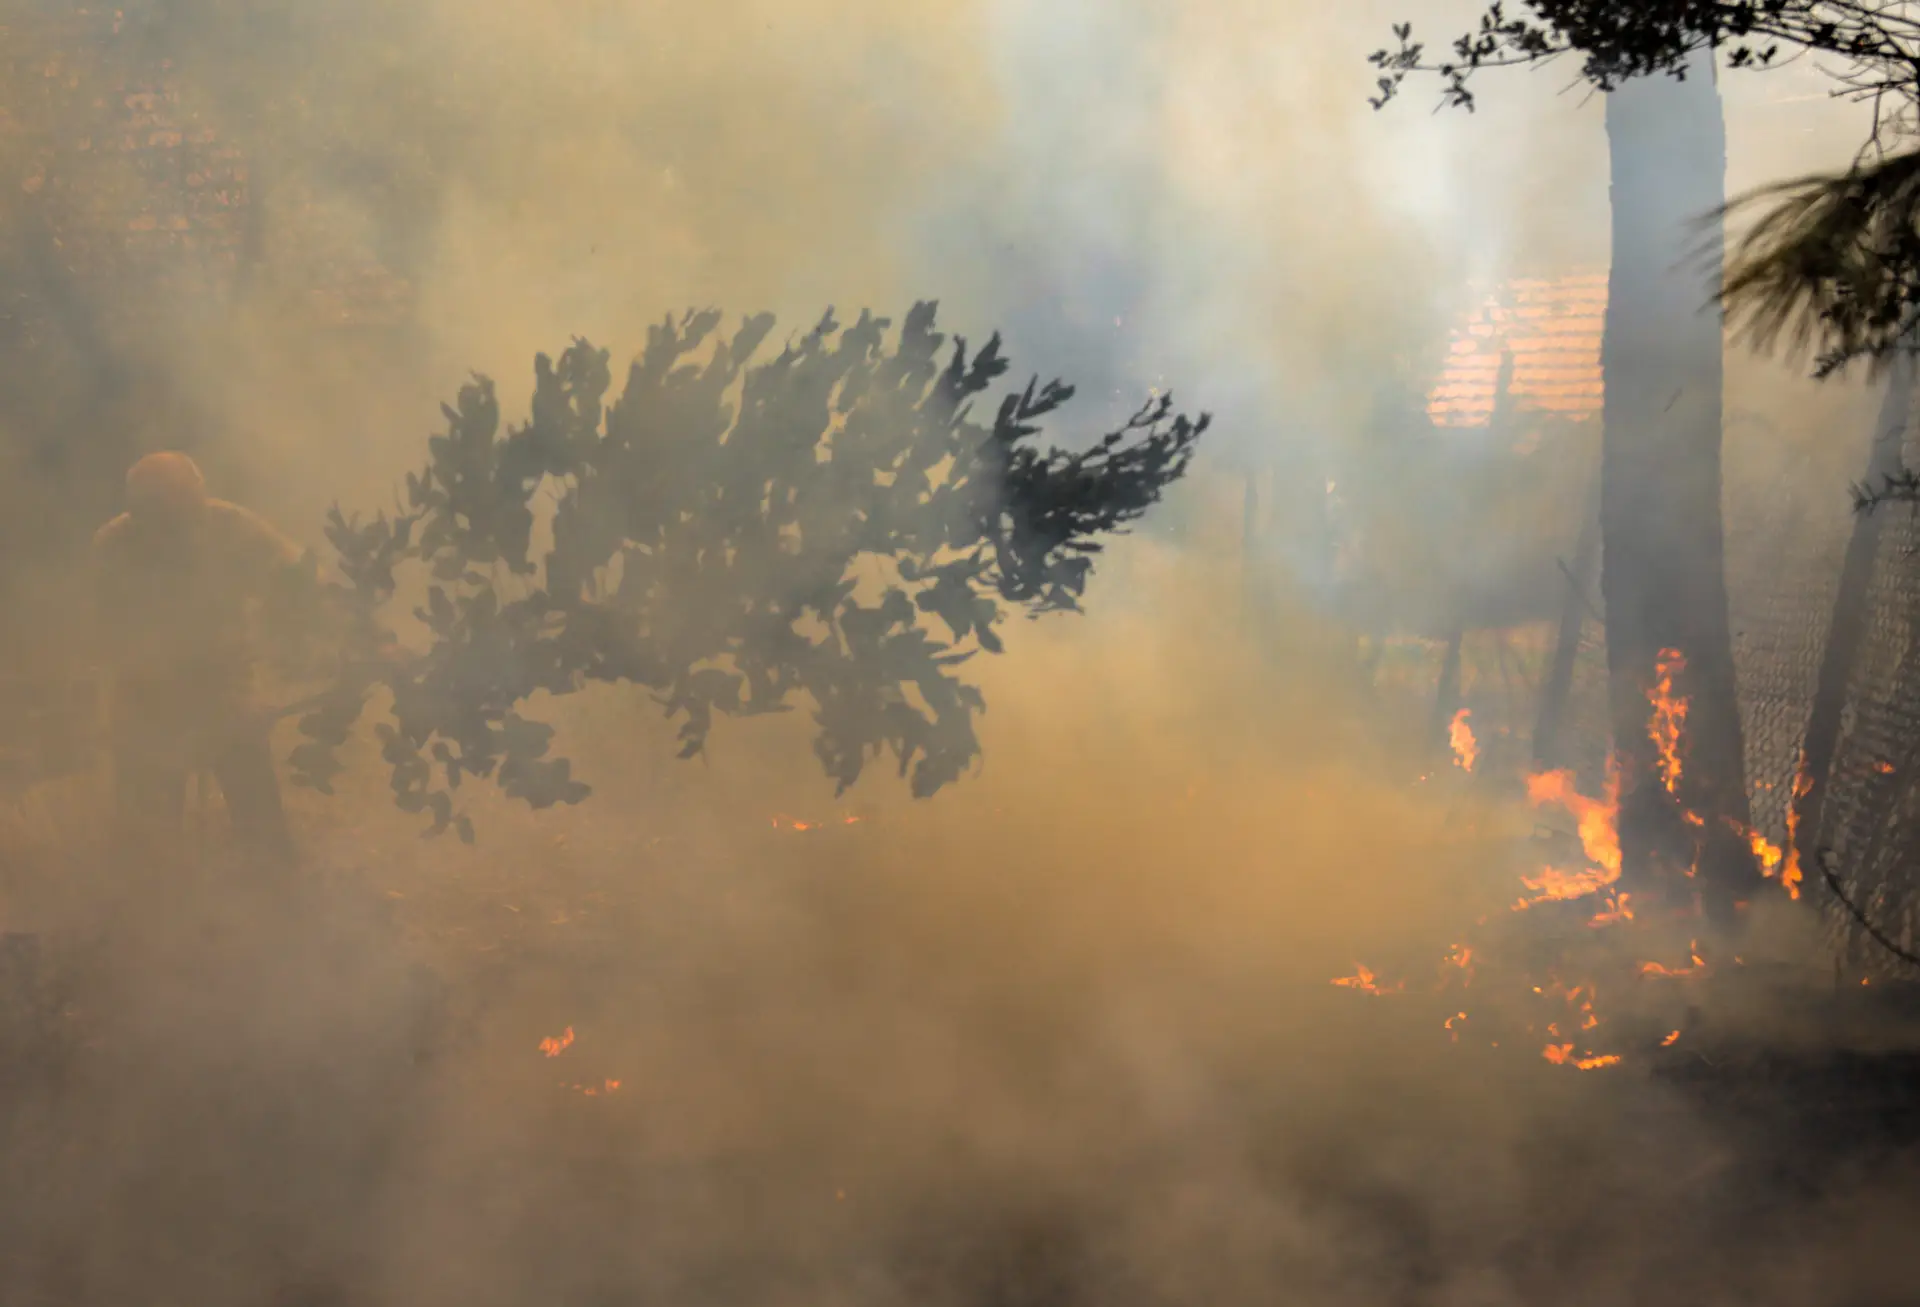 Risco de incêndio: 20 concelhos em perigo muito elevado